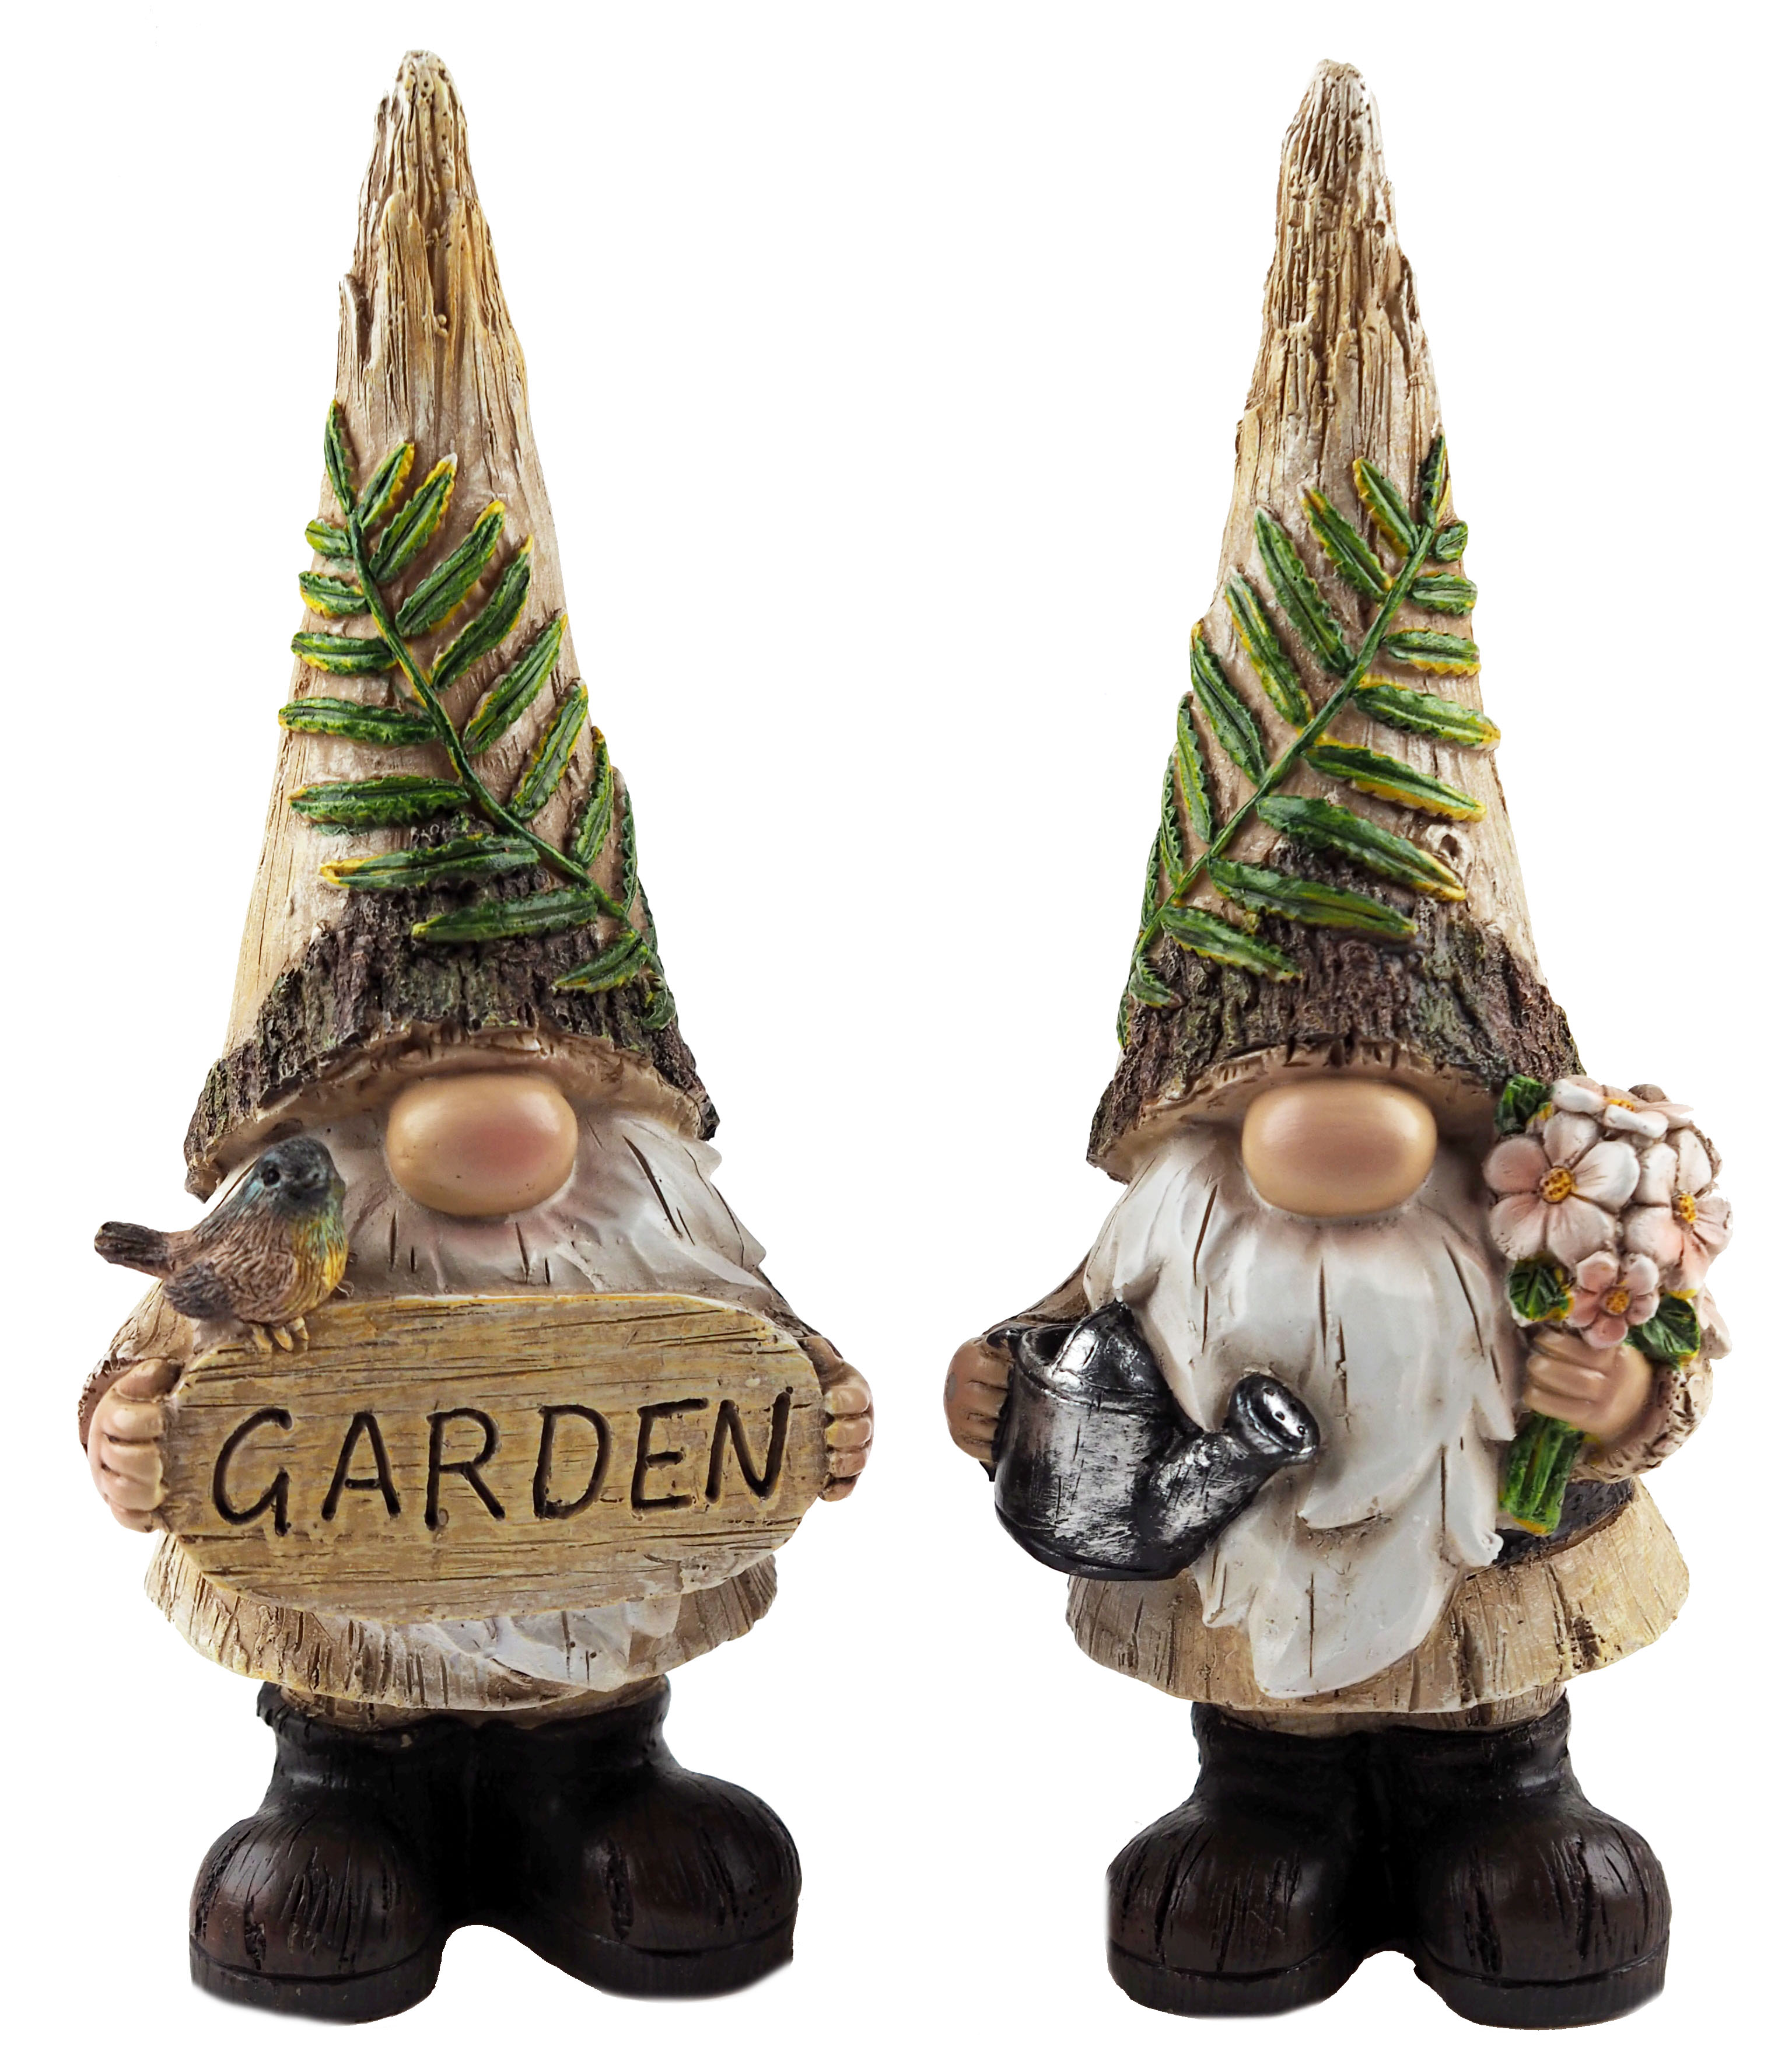 Nordic Scandinavian 20cm Garden Gnome Ornaments / Gonk Figurines (Set of 2)